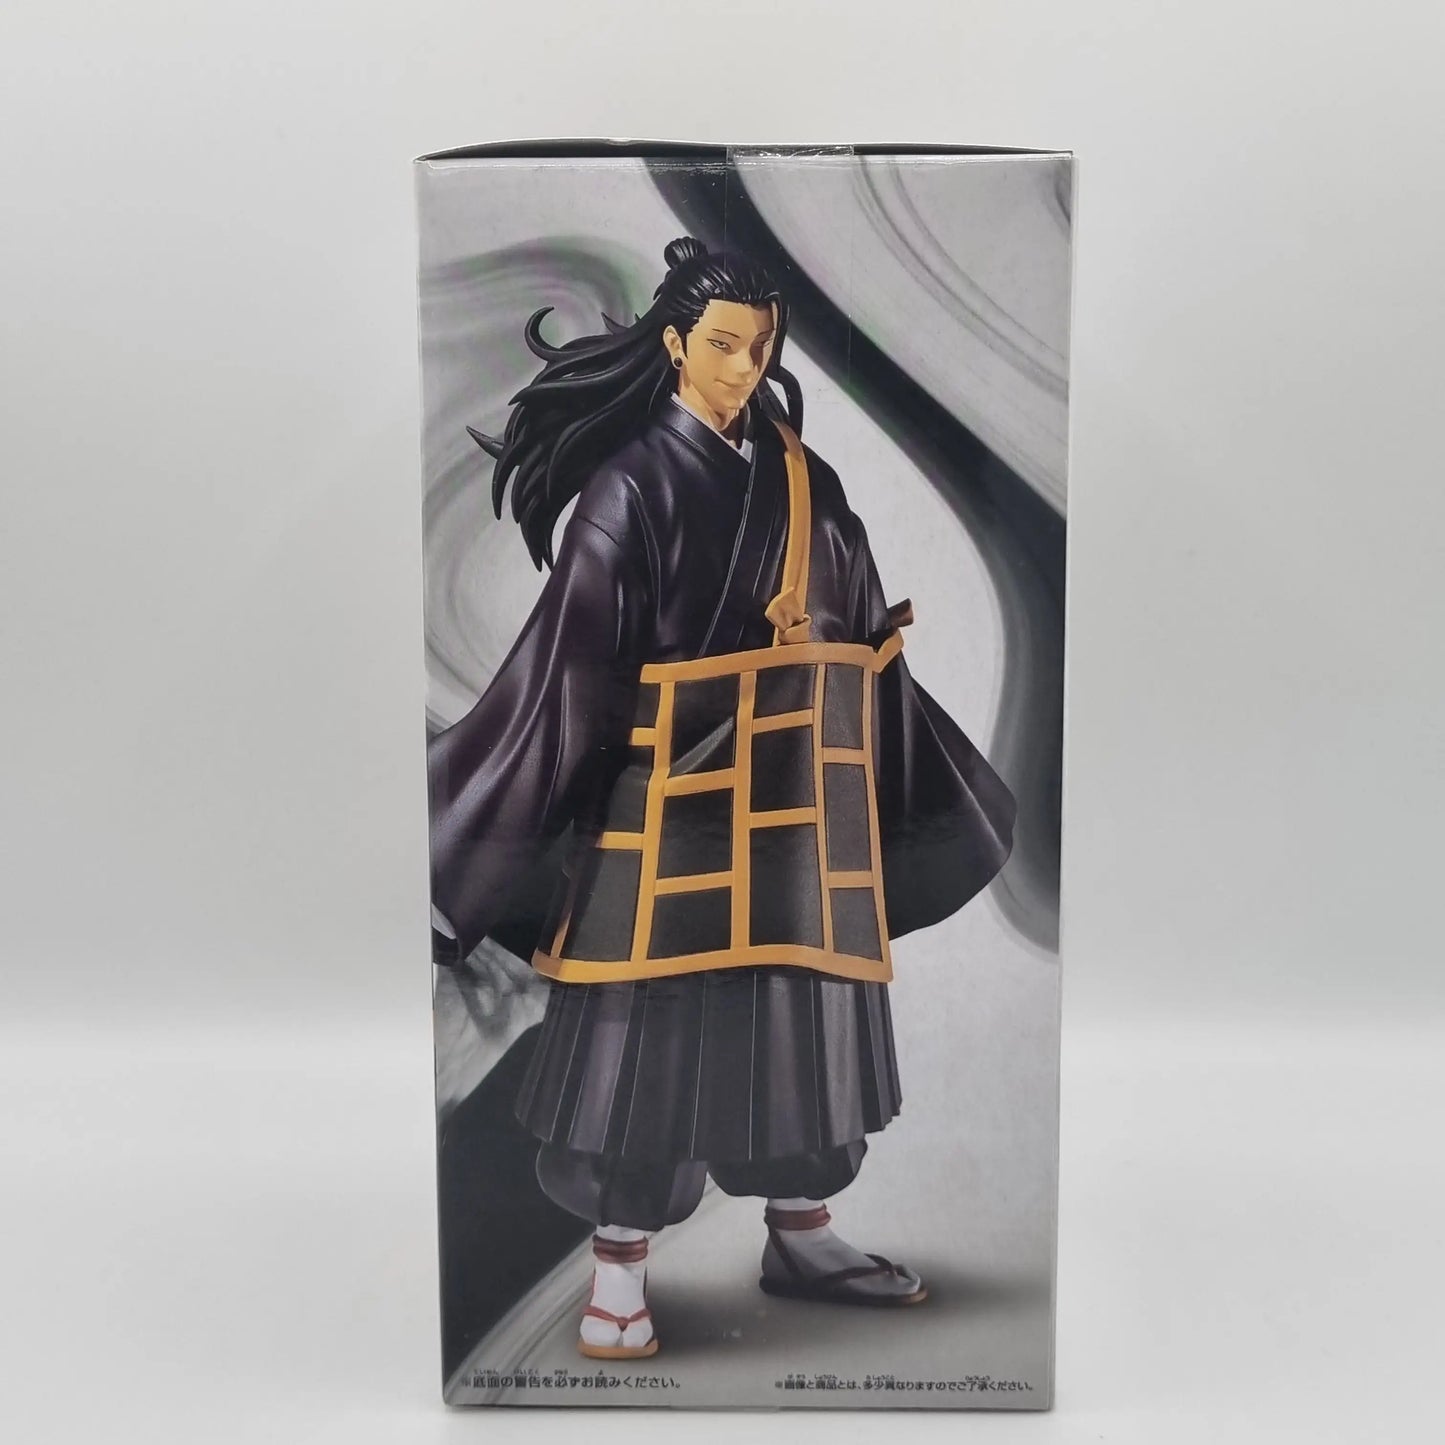 Jujutsu Kaisen 0 The Movie - Suguru Geto Figure - Banpresto